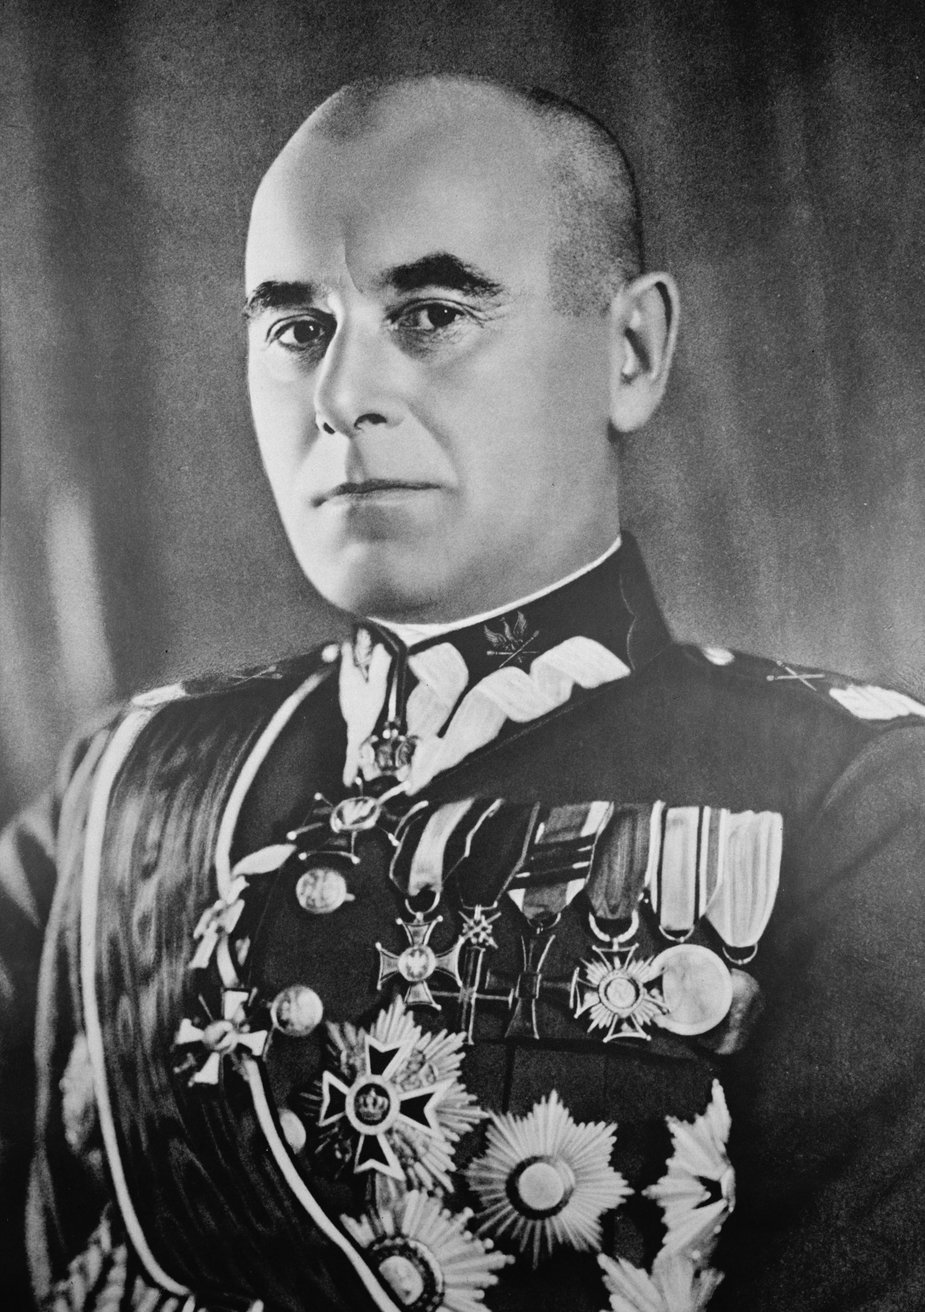 Edward Rydz-Śmigły (1886-1941) – Marszałek Polski od 1936 (domena publiczna)